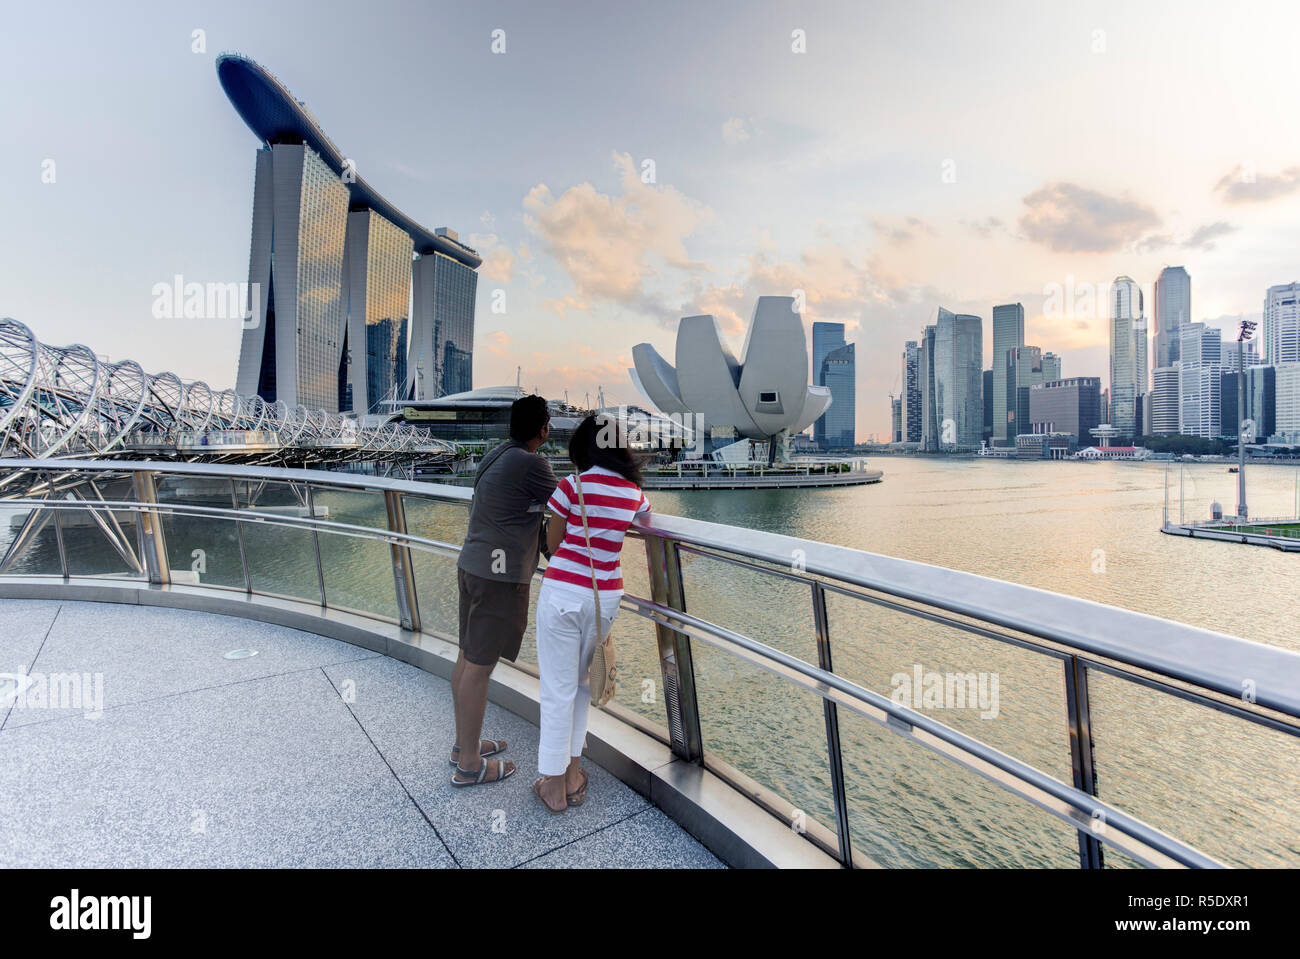 Singapore, Helix ponte che conduce attraverso il Marina Bay per il Marina Bay sands hotel e resort (MR) Foto Stock